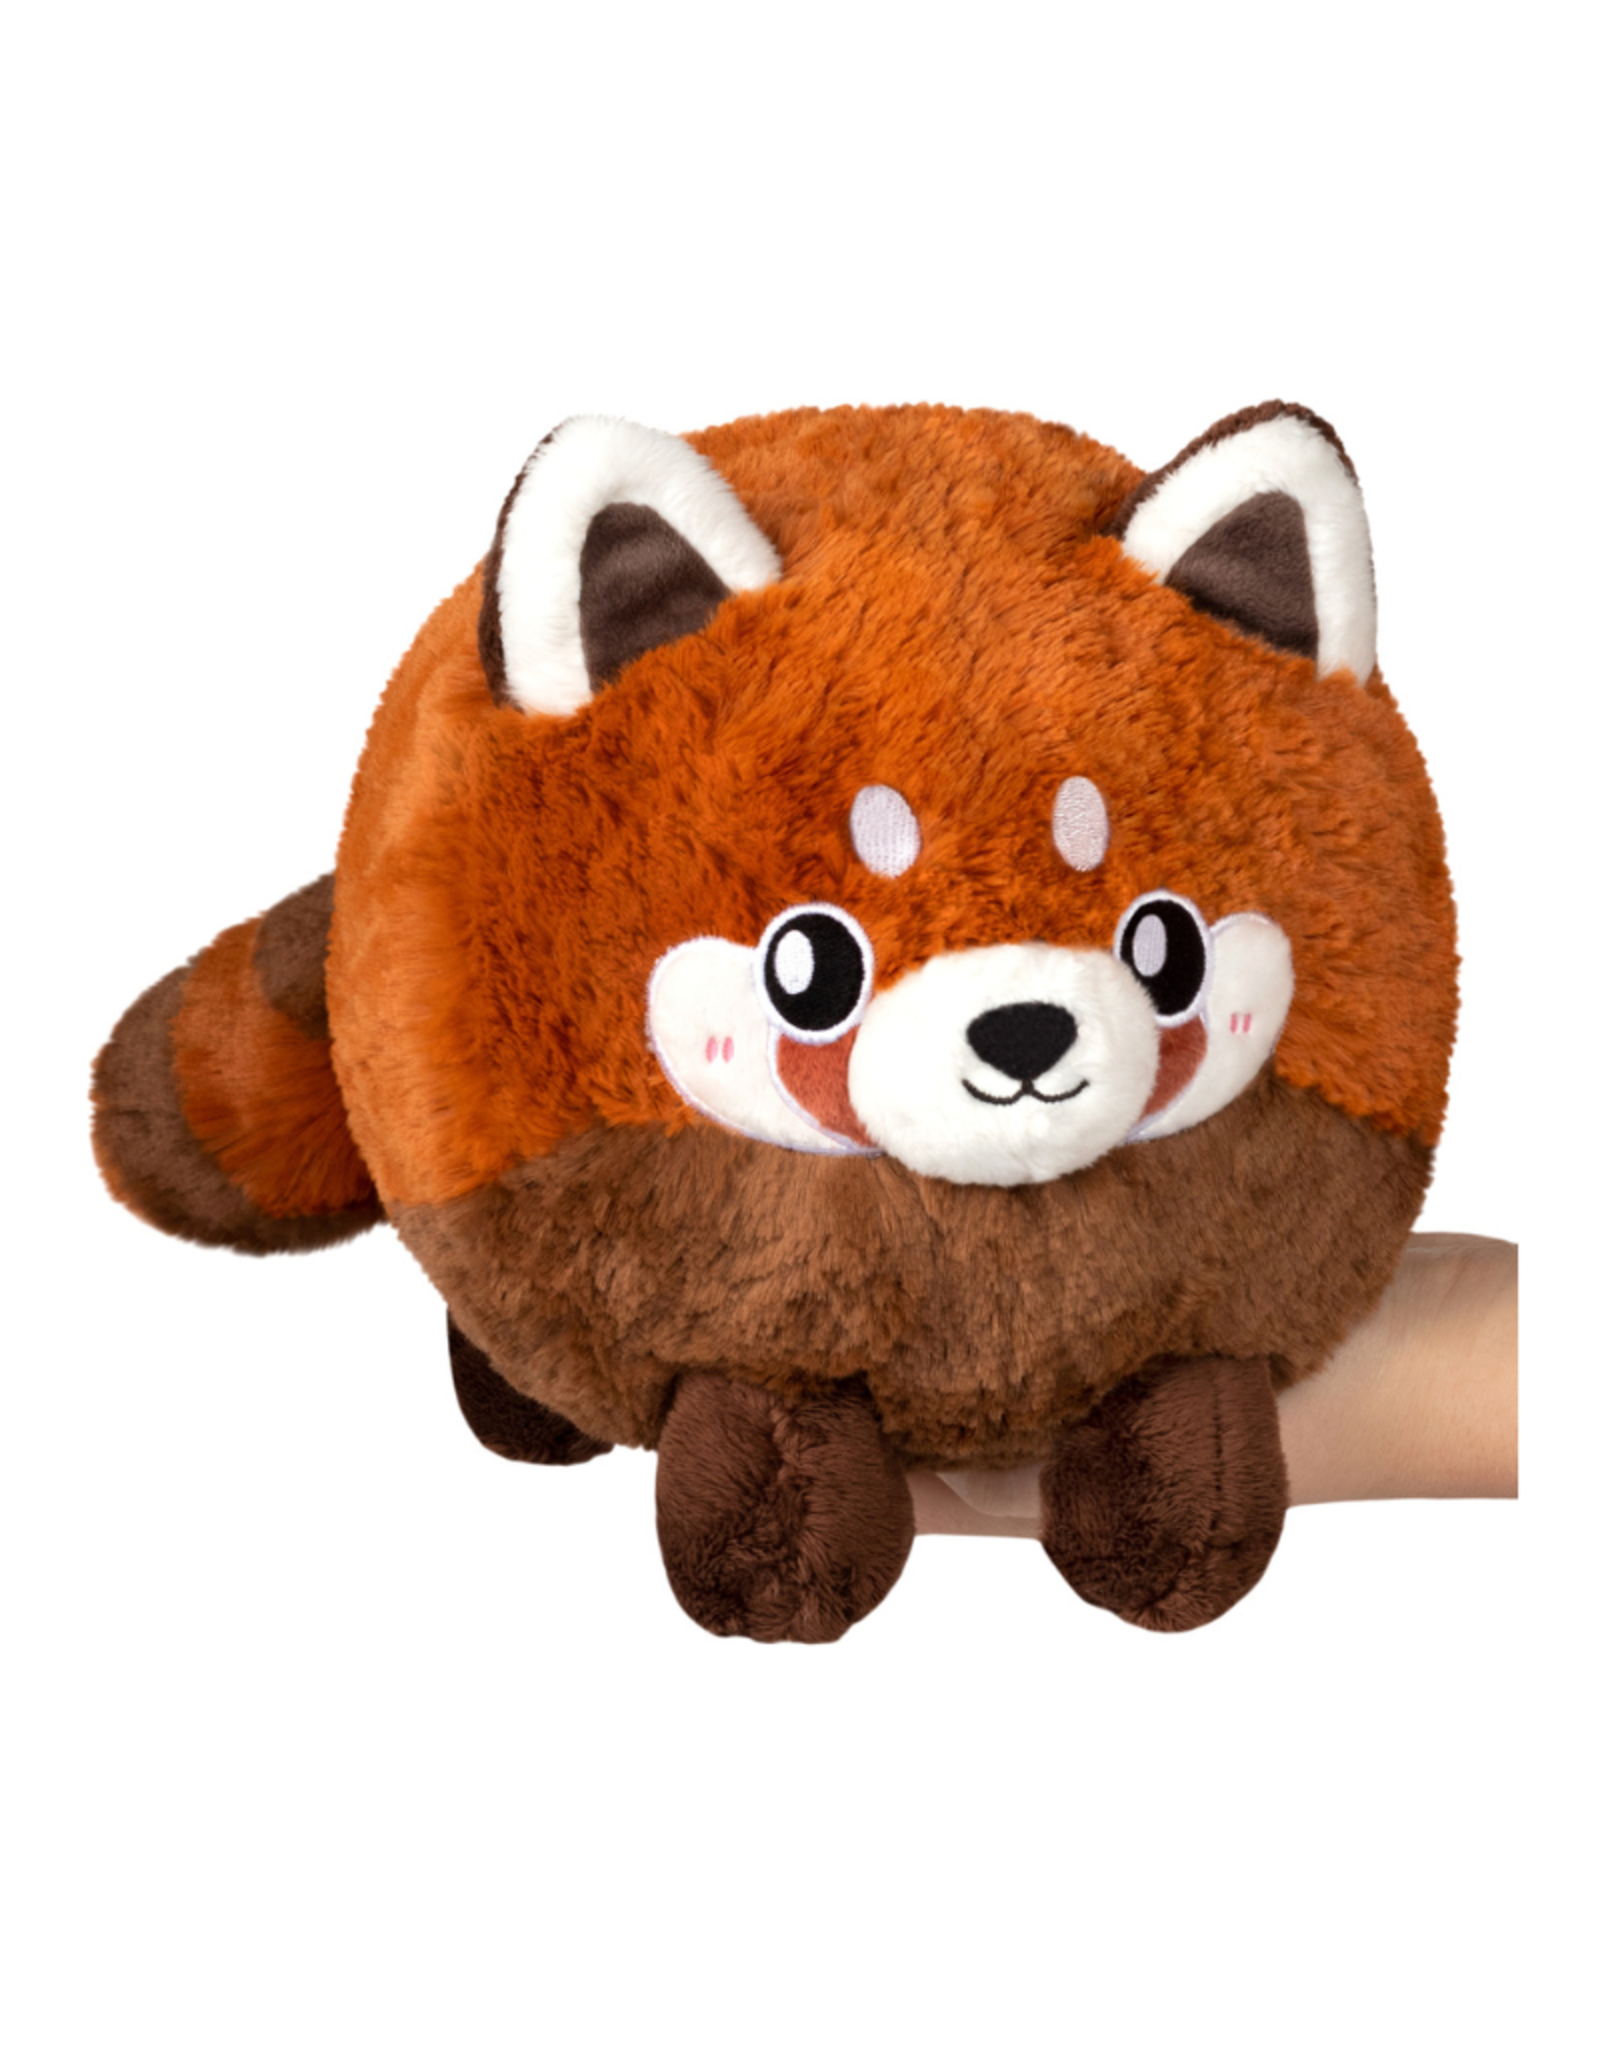 Squishable Mini Squishable: Baby Red Panda